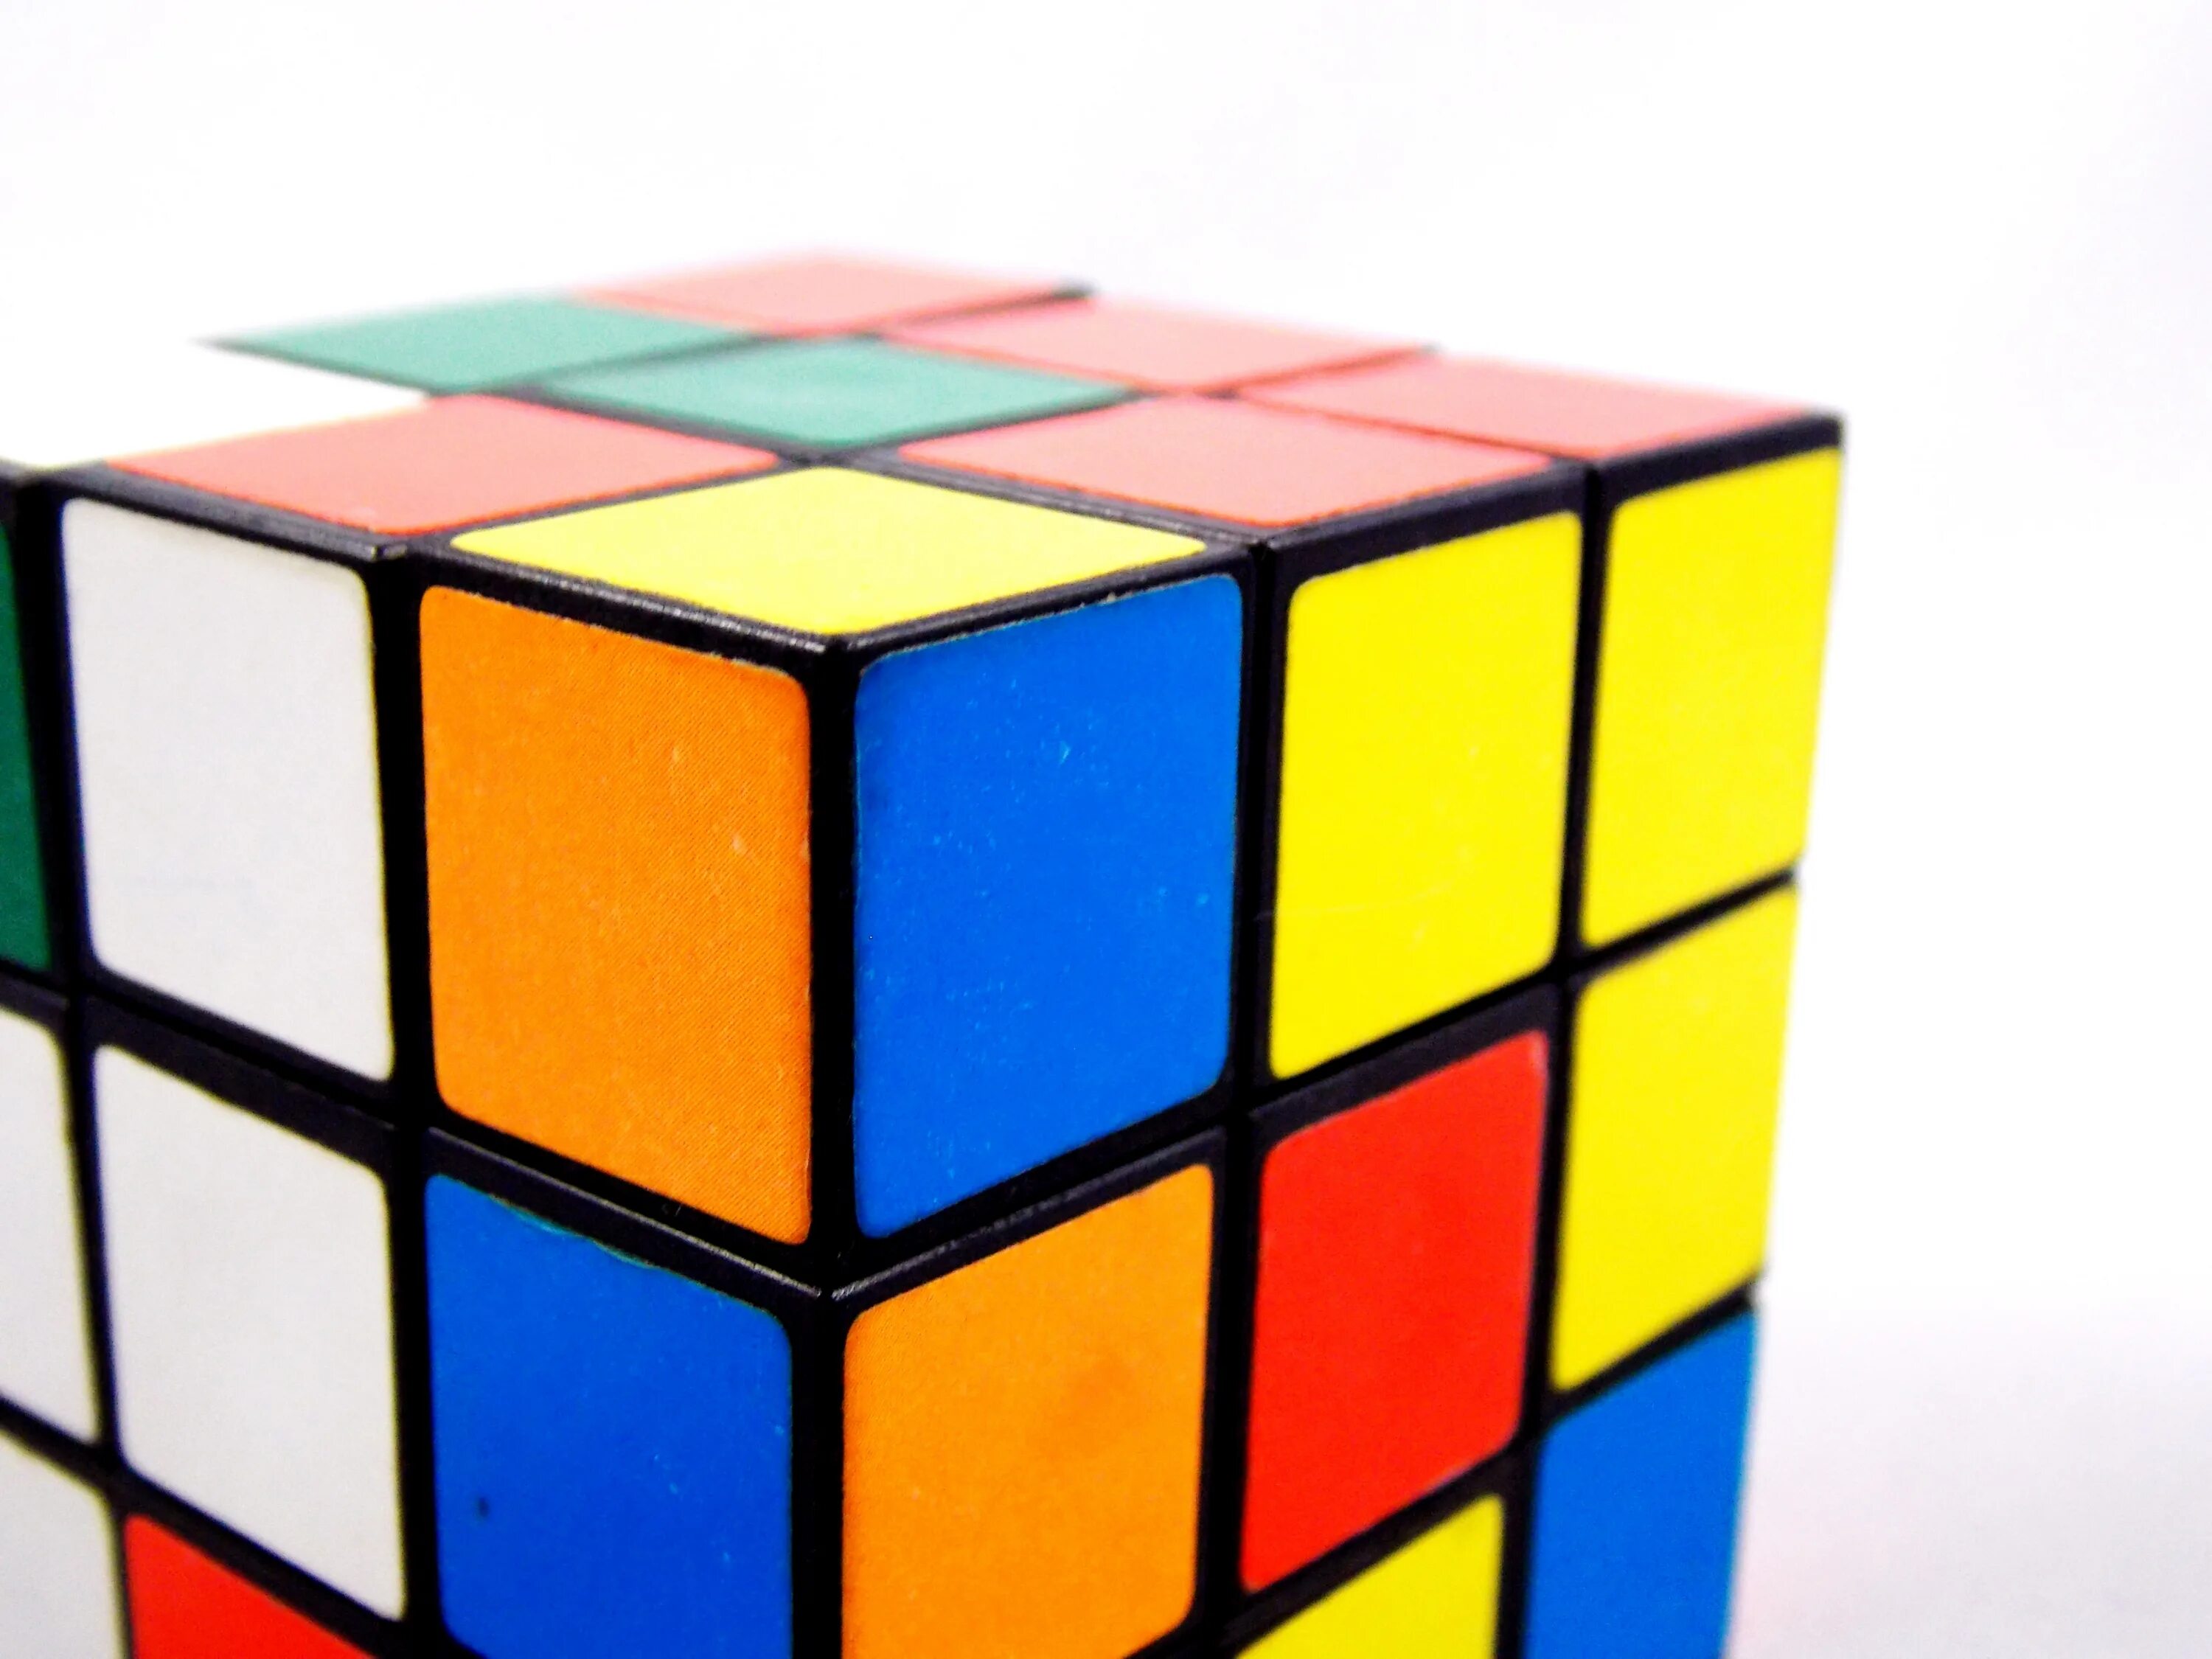 Kubik. Кубик рубик. Эрнё рубик. Кубик рубик разноцветный. Изображение кубика Рубика.